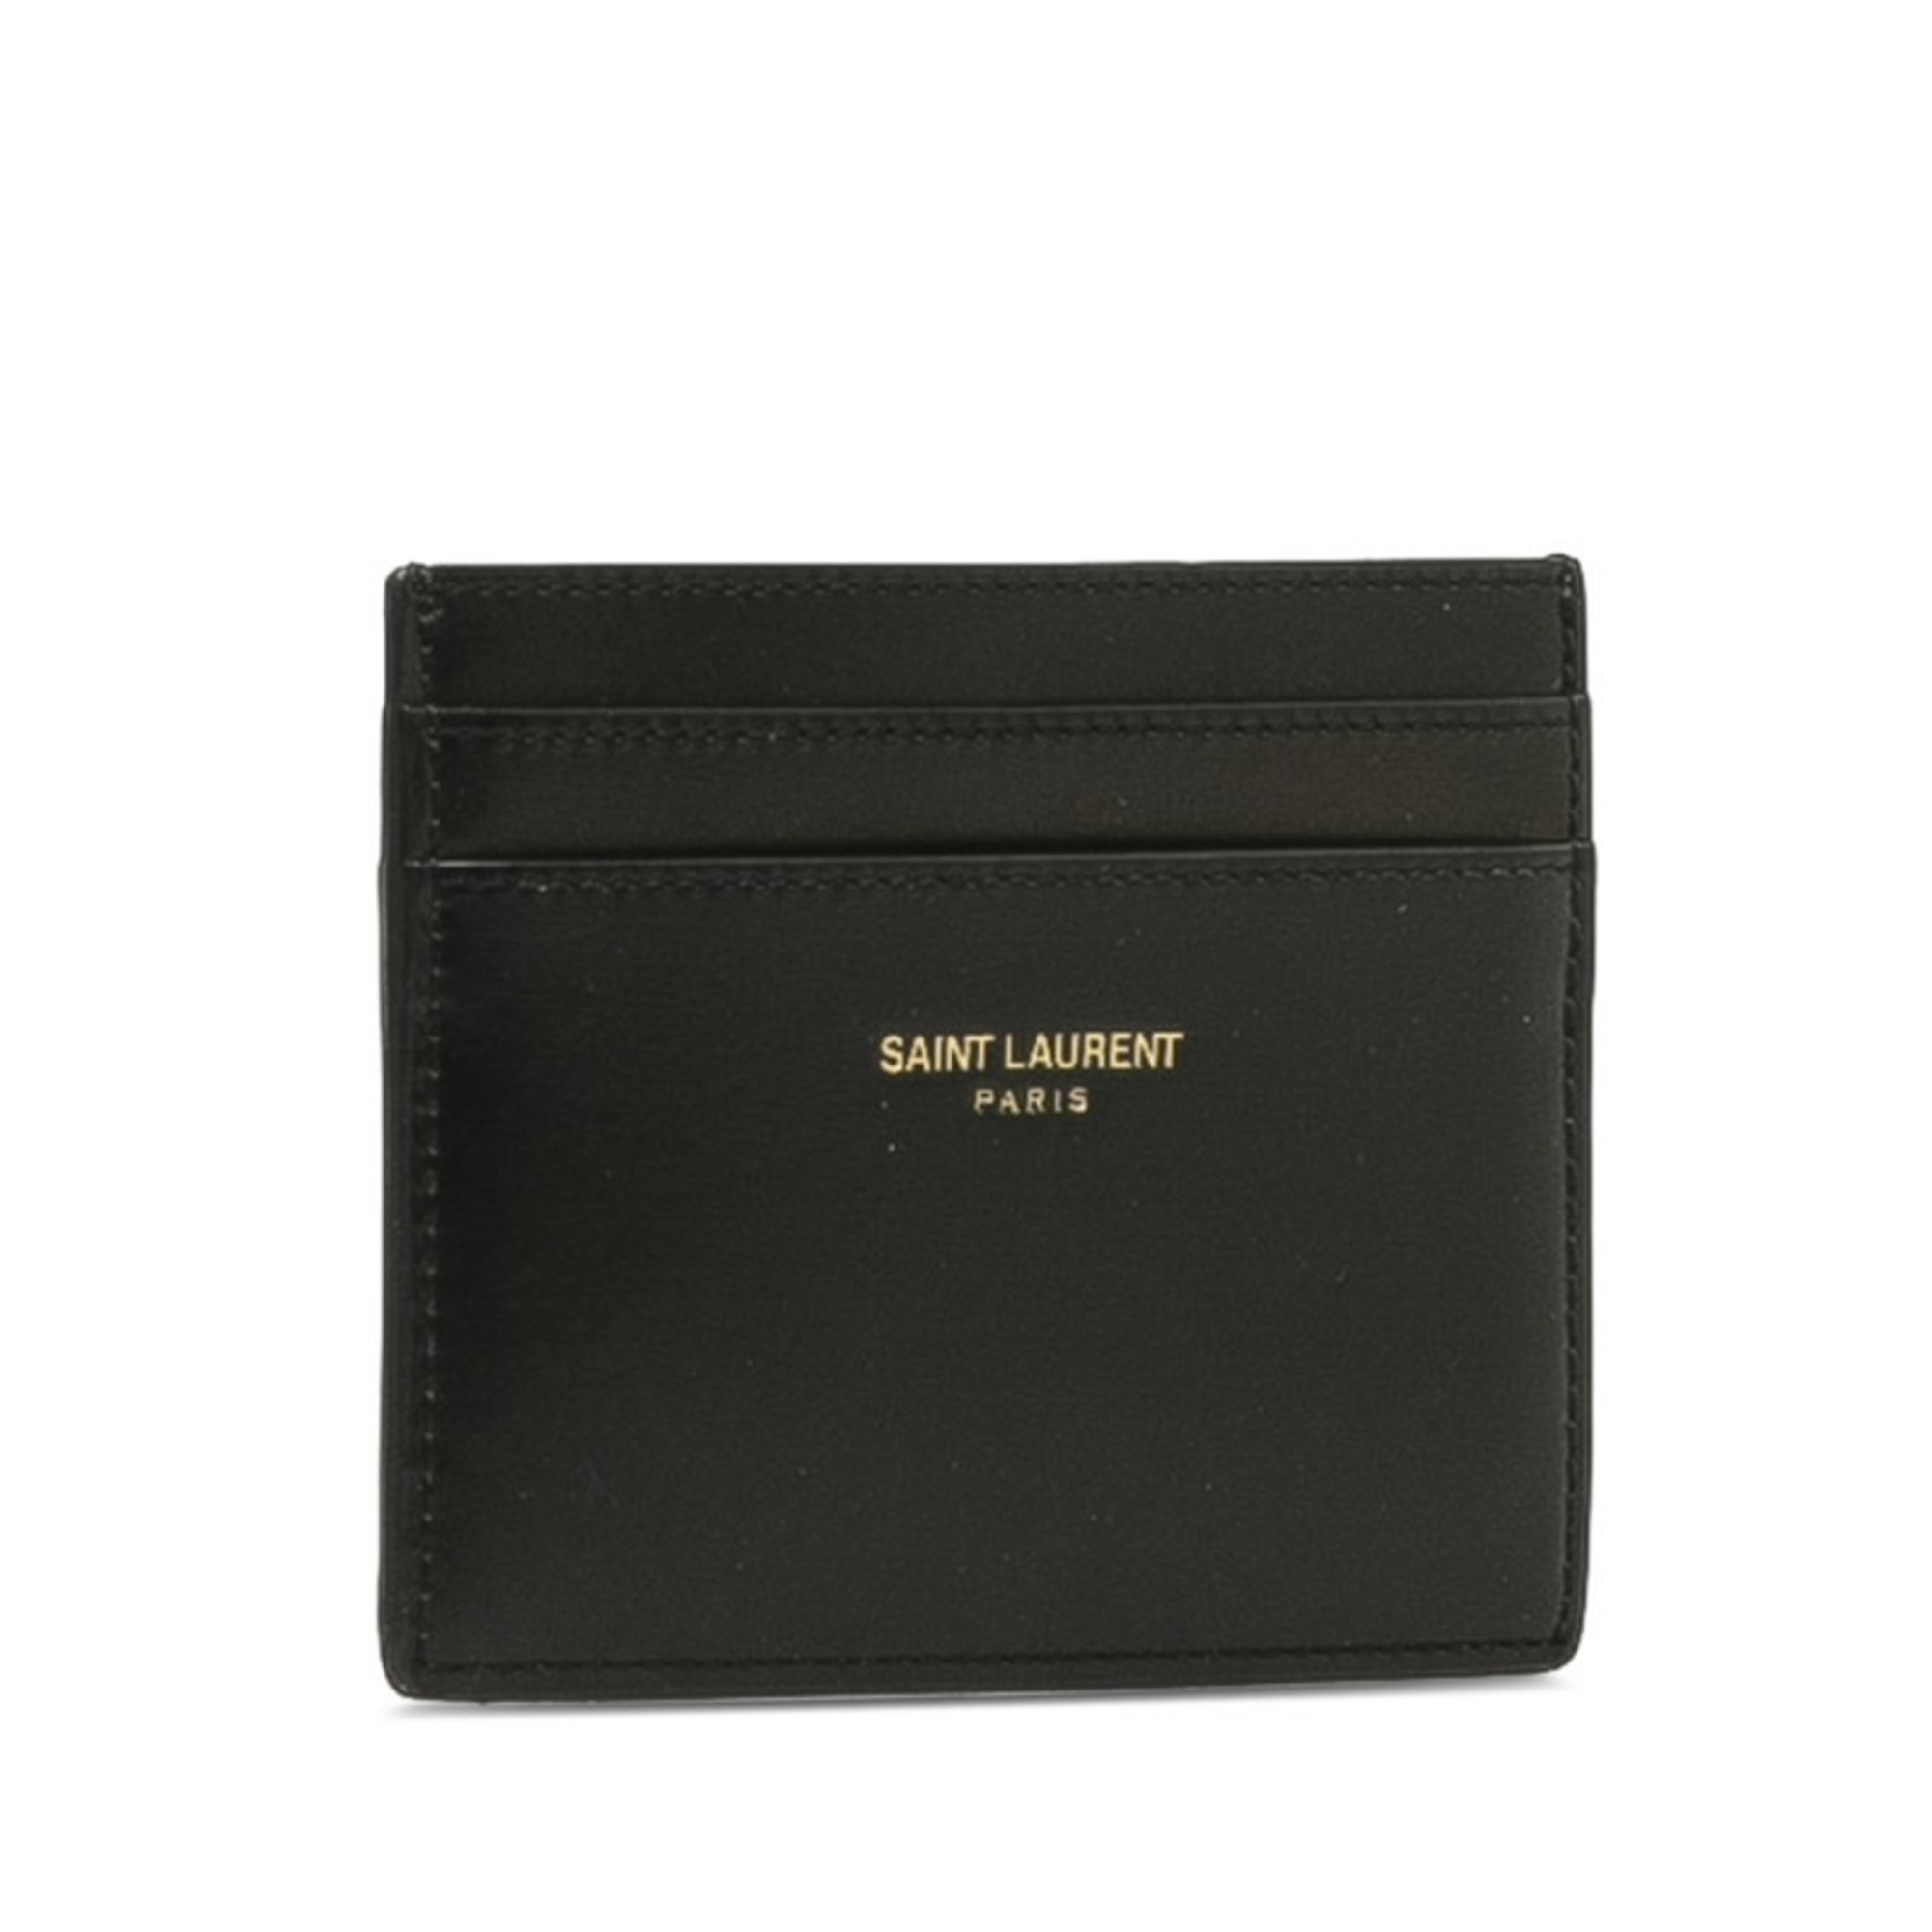 Saint Laurent Card Case Business Holder 375946 Black Leather Men's SAINT LAURENT